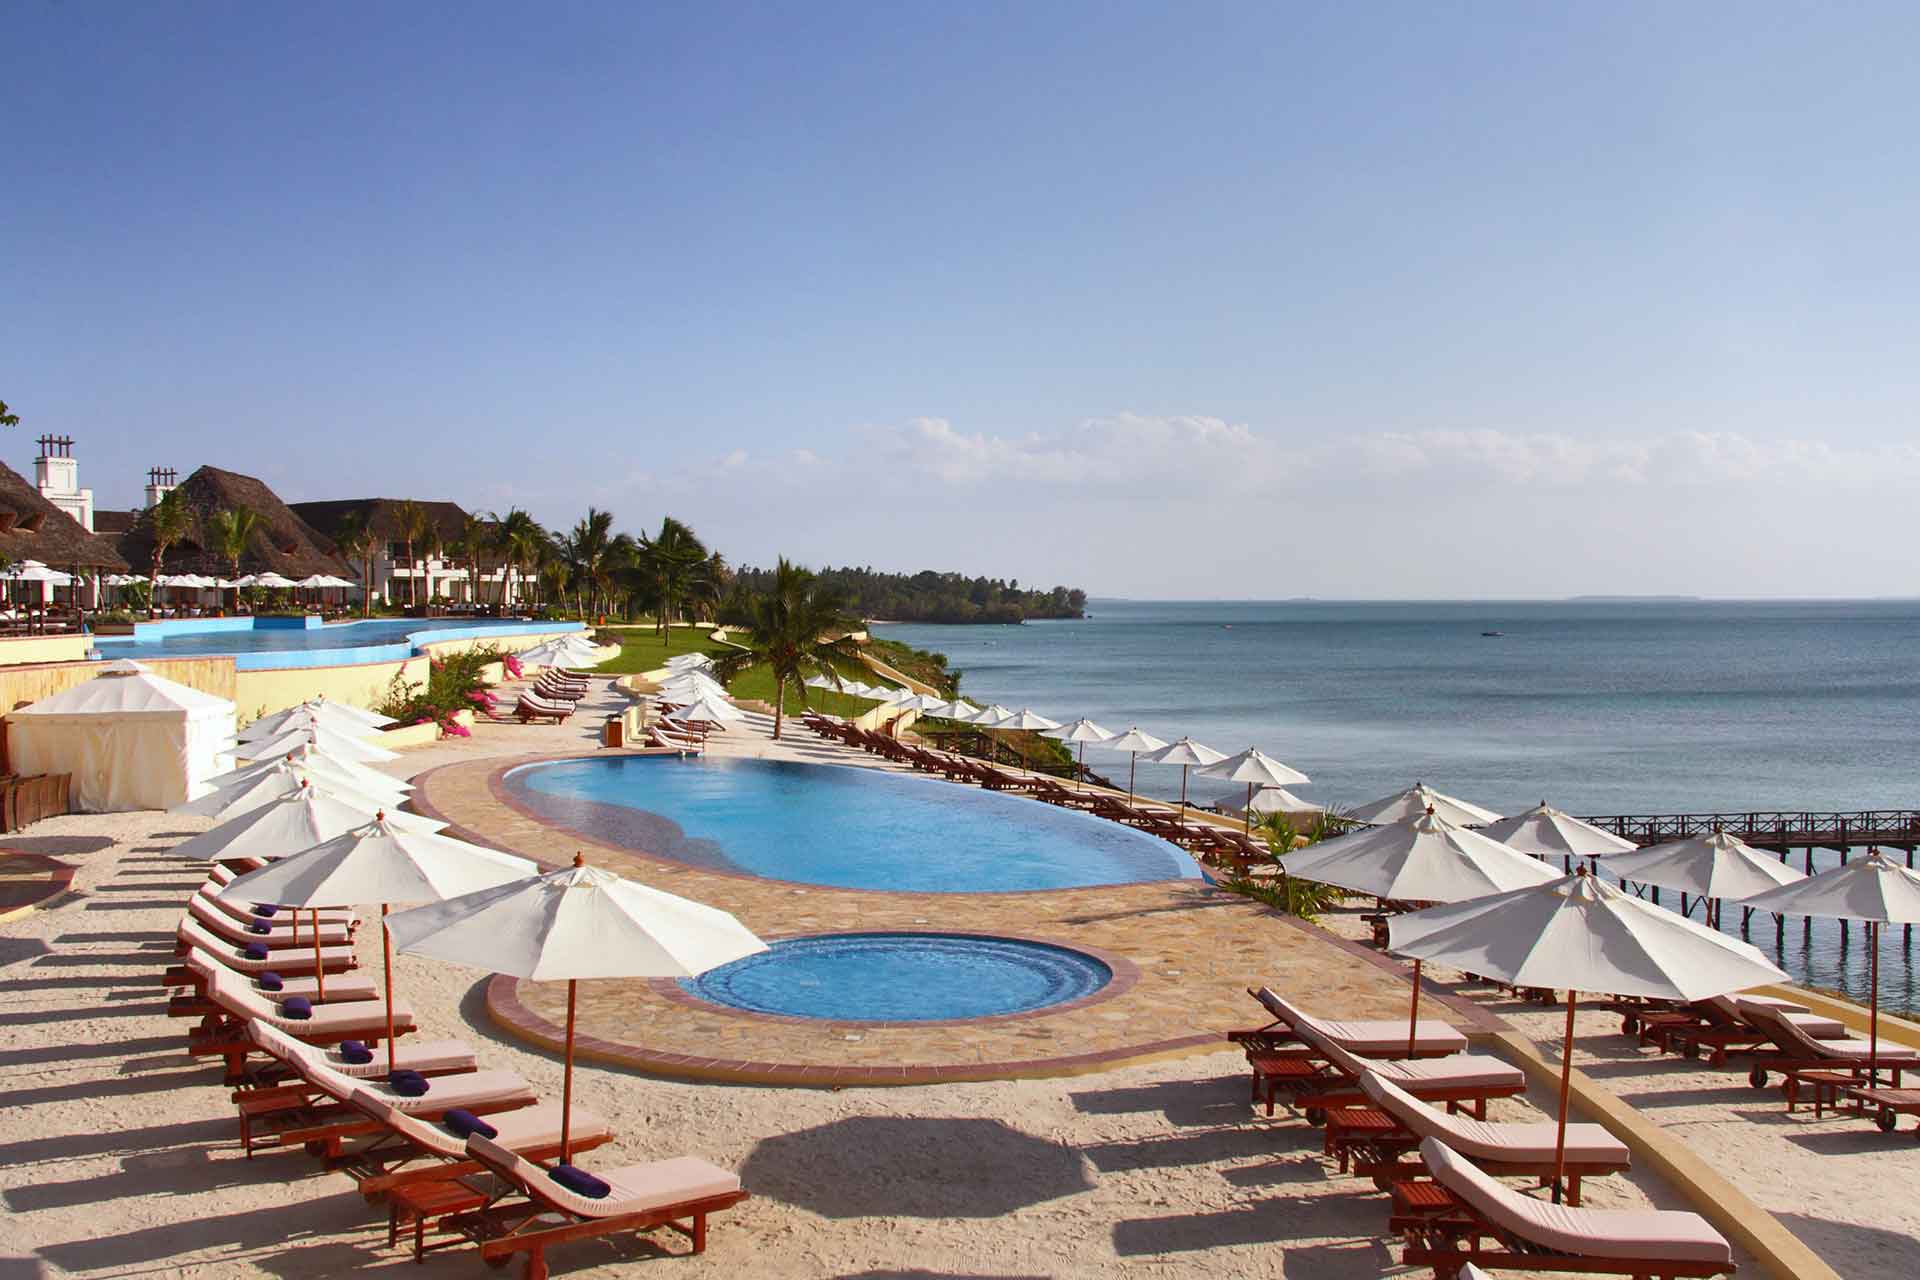 Отель клиф. Sea Cliff Resort Spa Zanzibar. Sea Cliff Resort & Spa 5* (Мангапвани). Пляж Мангапвани Занзибар. Море с отелем.